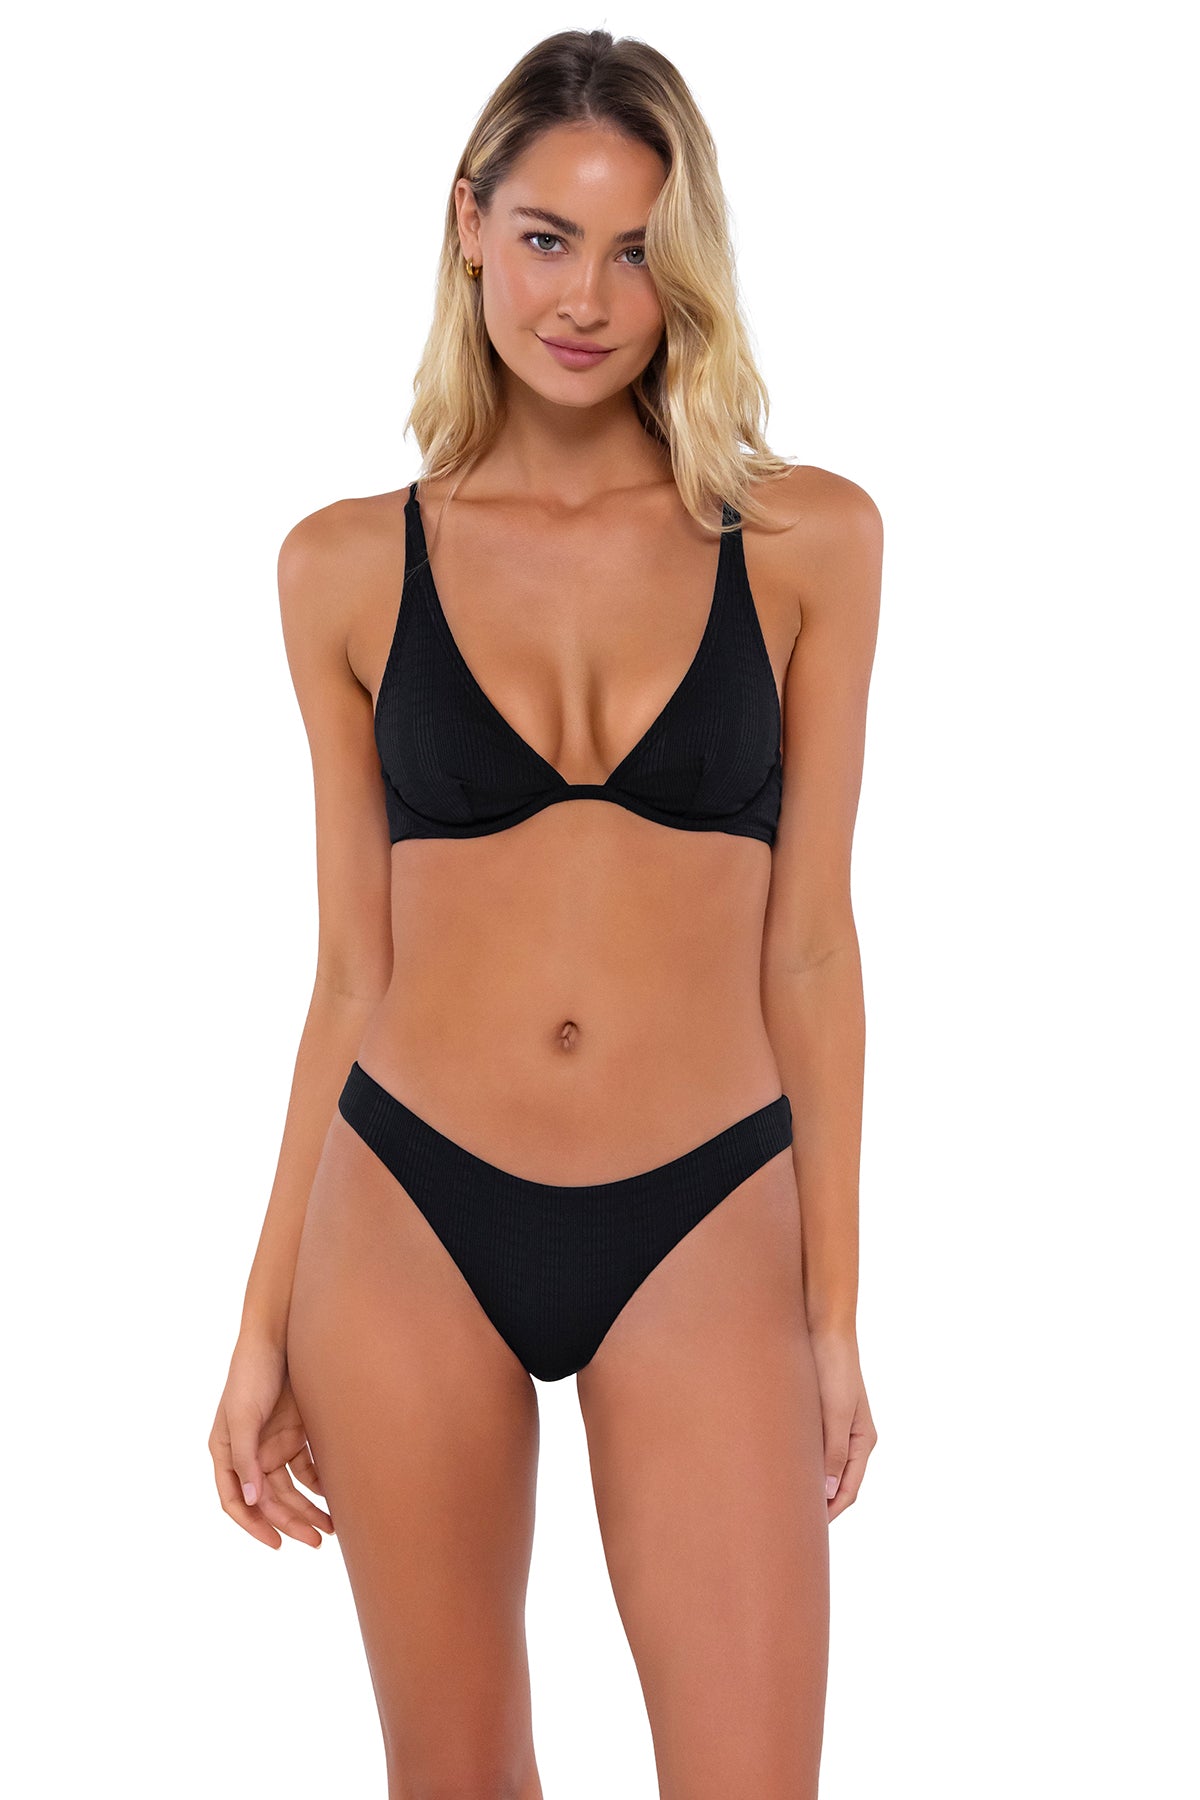 Front pose #1 of Jessica wearing B Swim Black Baja Rib Wyatt Top with matching Havana bikini bottom